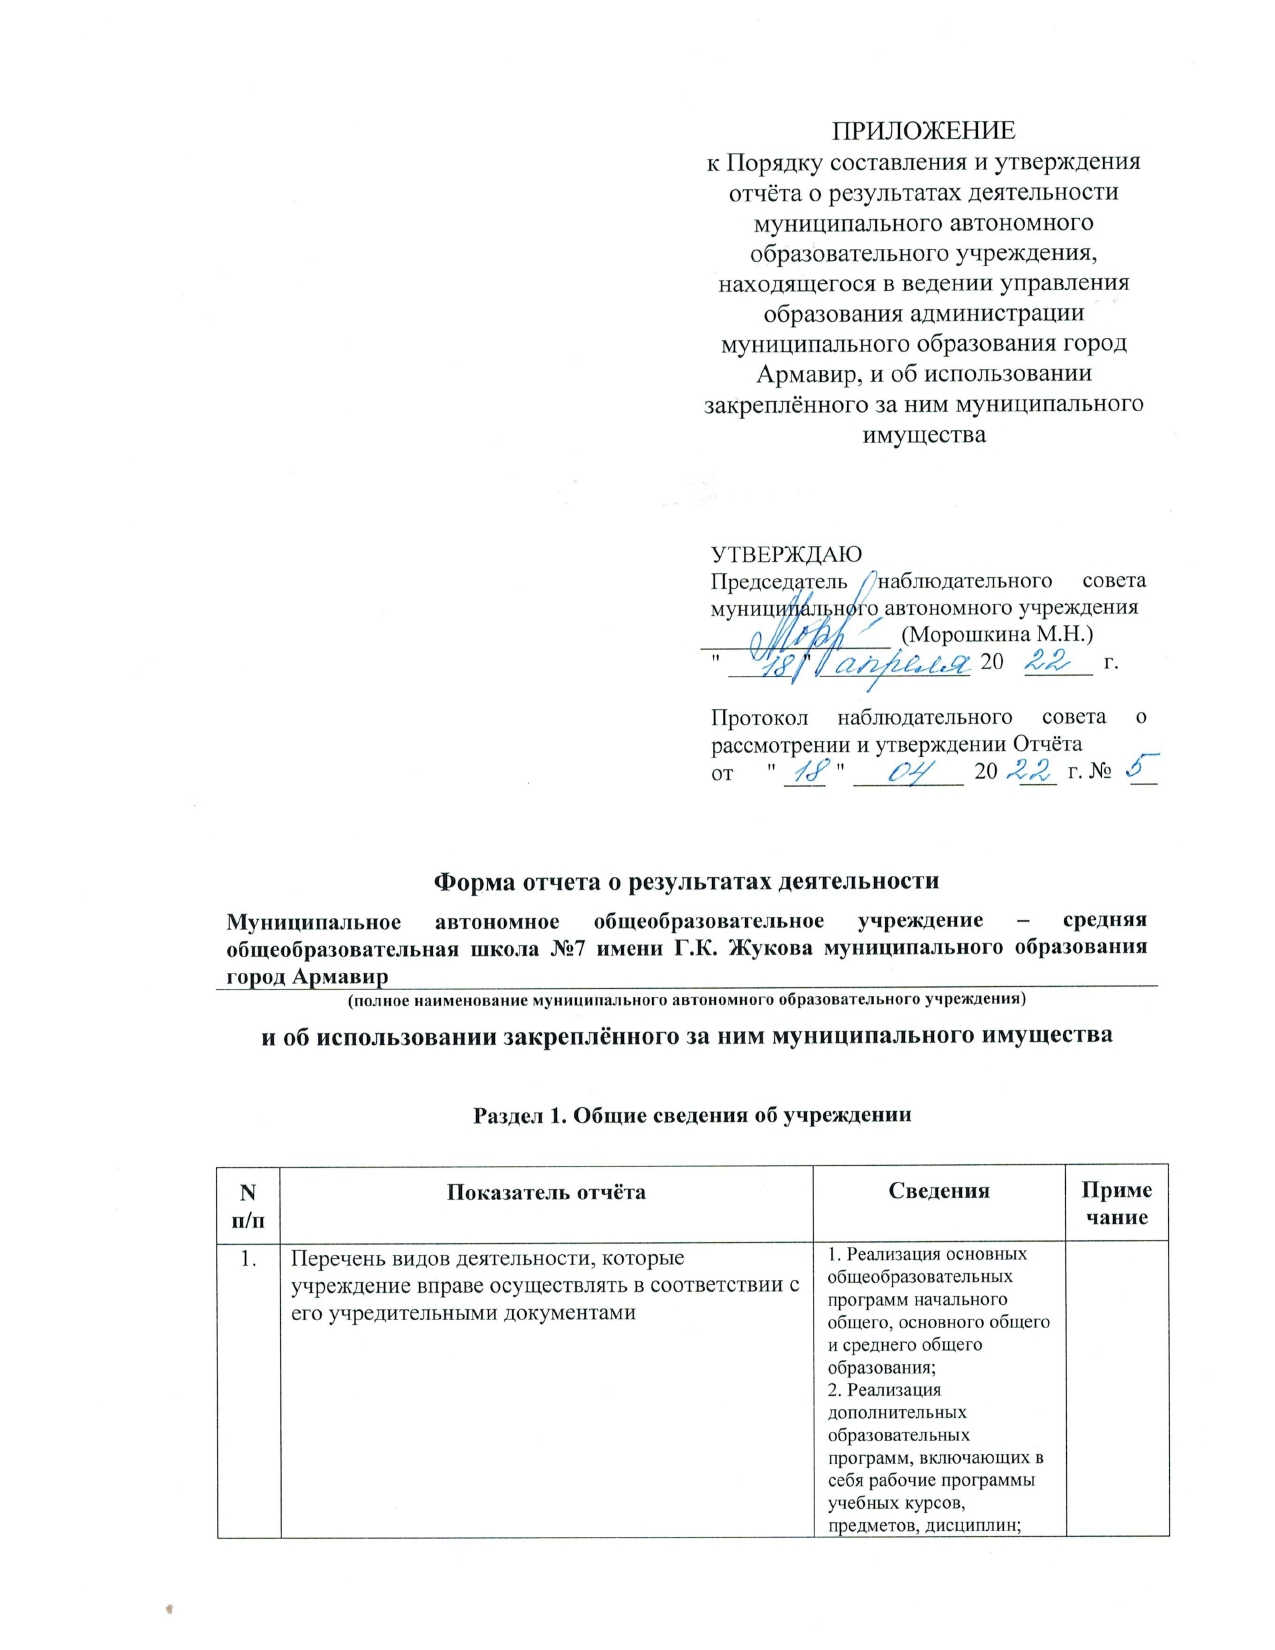 Форма отчета о результатах деятельности МАОУ СОШ 7 имени Г.К. Жукова за 2021 год_page-0001.jpg